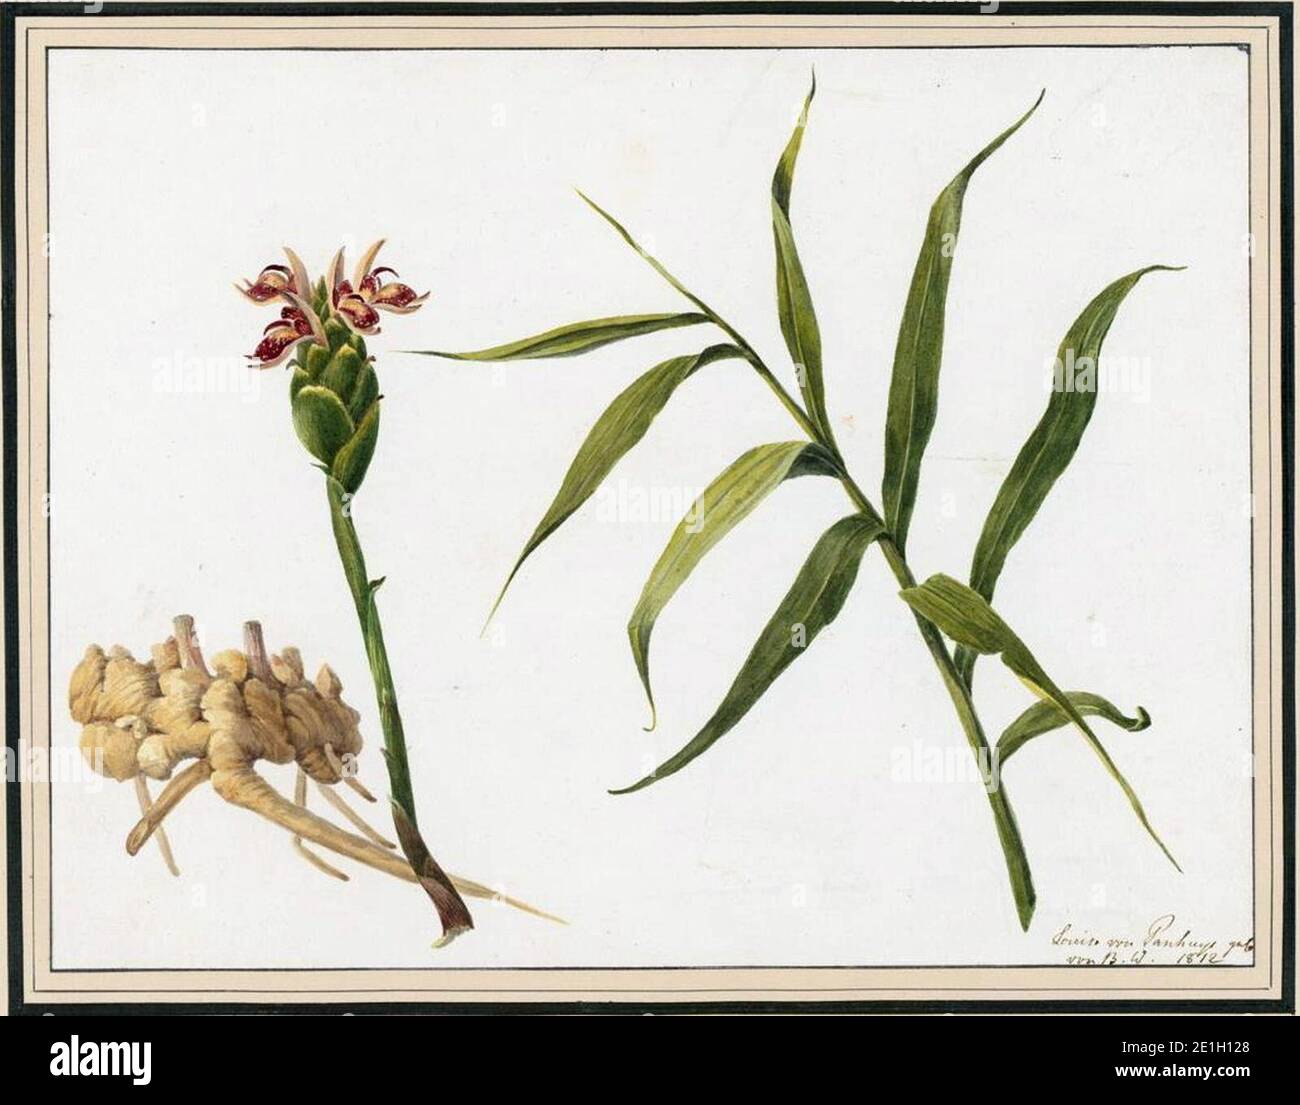 Louise van Panhuys, Ingwer mit Blüte und Stengel, 1812. Stock Photo